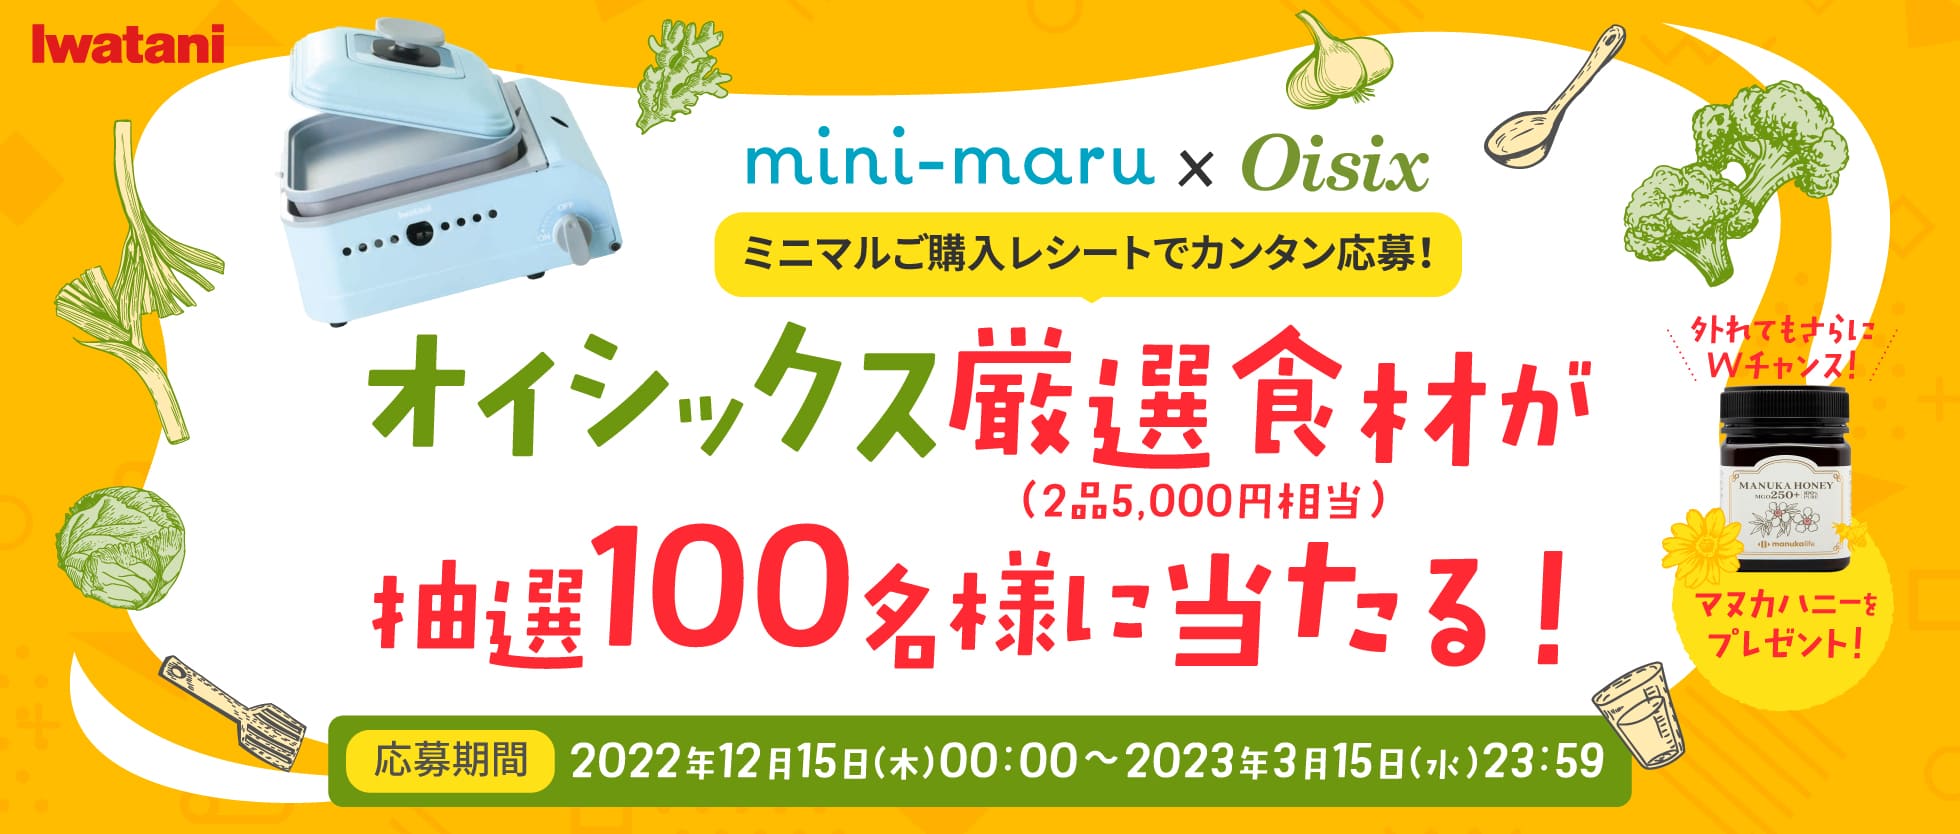 mini-maru × oisix